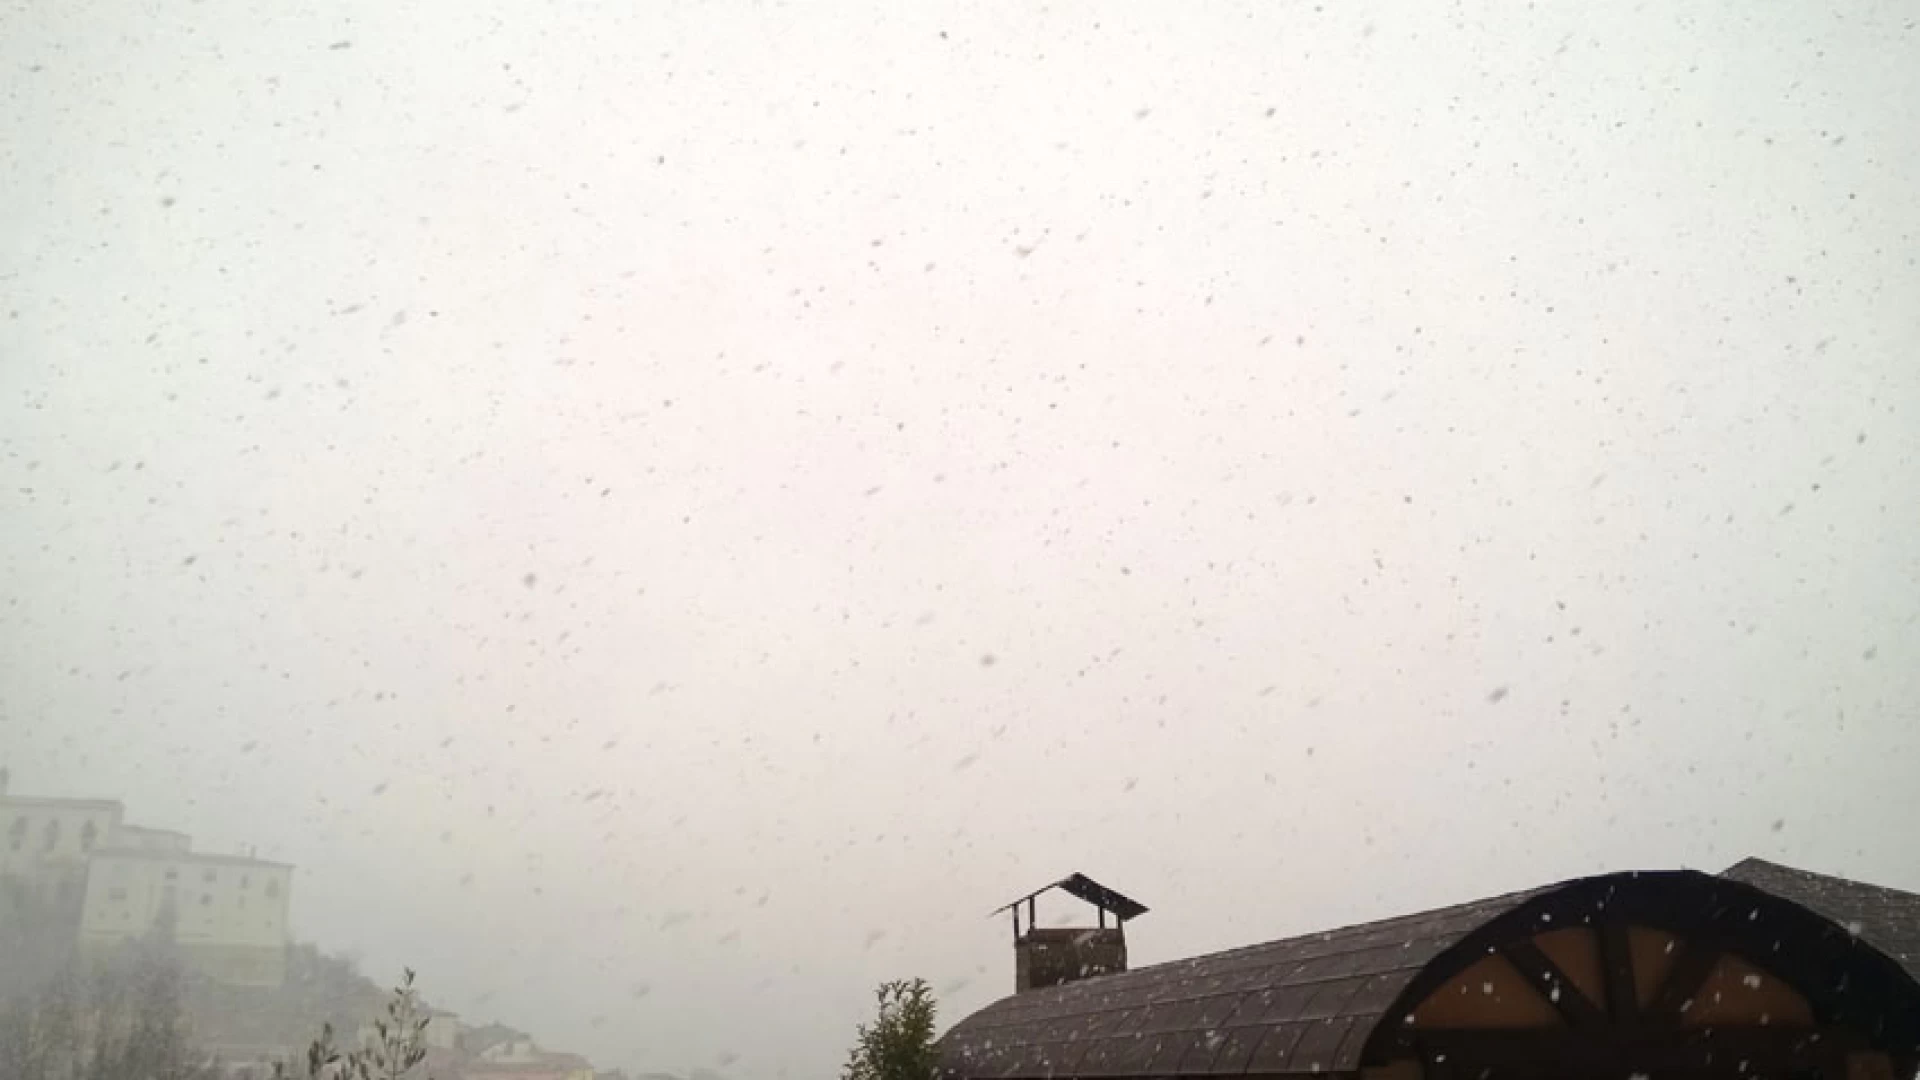 Valle del Volturno: aggiornamento meteo. La quota neve scenda. Forti nevicate in atto in tutti i comuni del circondario.